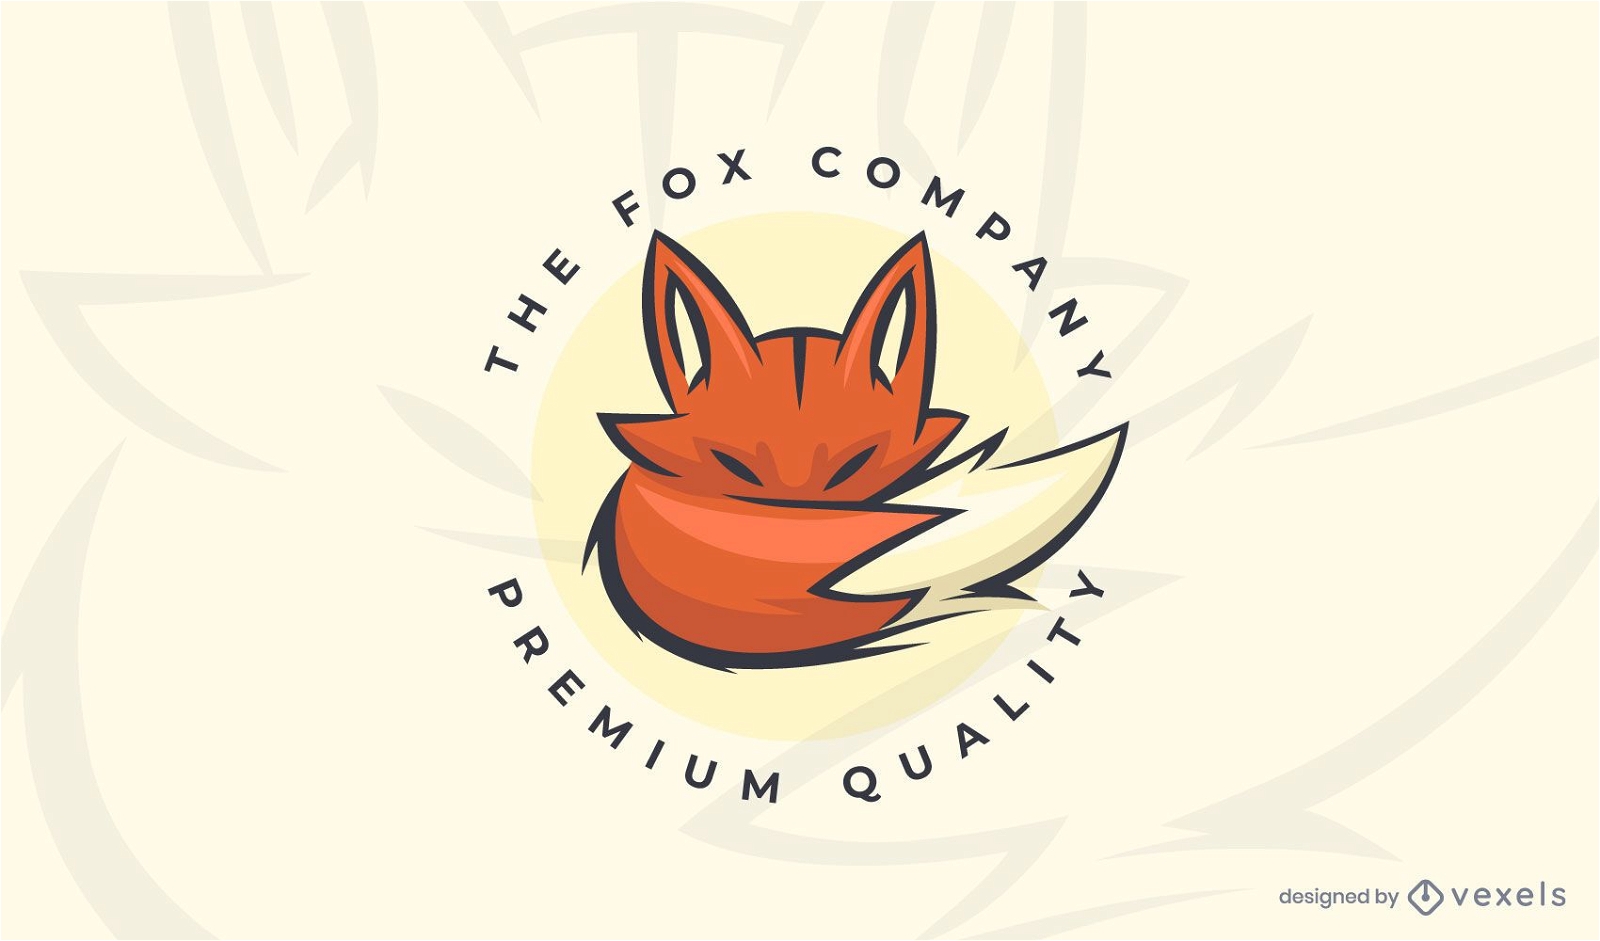 La plantilla de logotipo de empresa fox